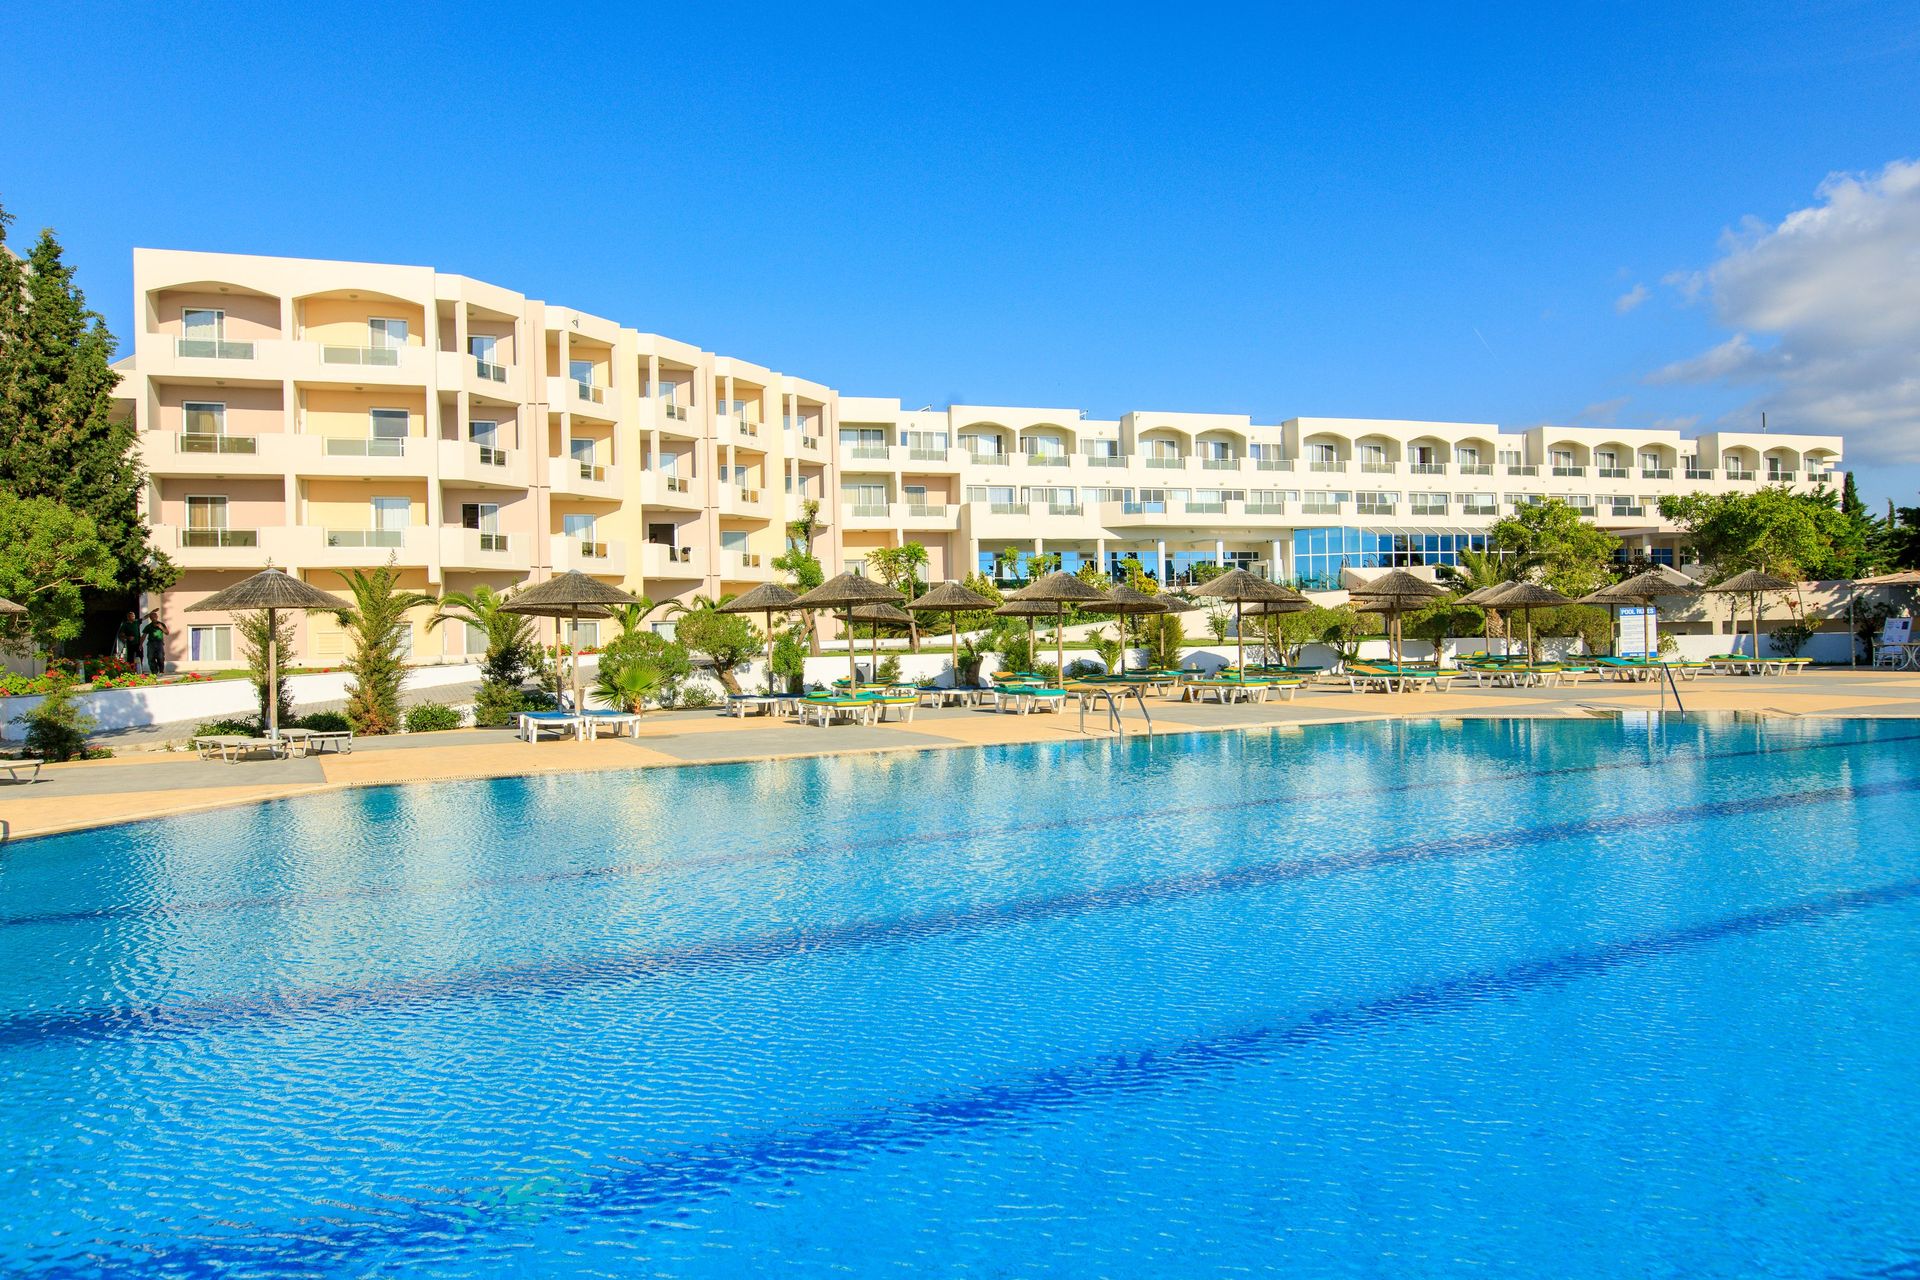 5* Sovereign Beach Hotel - Καρδάμαινα, Κως ✦ 4 Ημέρες (3 Διανυκτερεύσεις) ✦ 2 άτομα ✦ 12 ✦ 25/04/2022 έως 30/09/2022 ✦ Μπροστά στην παραλία!